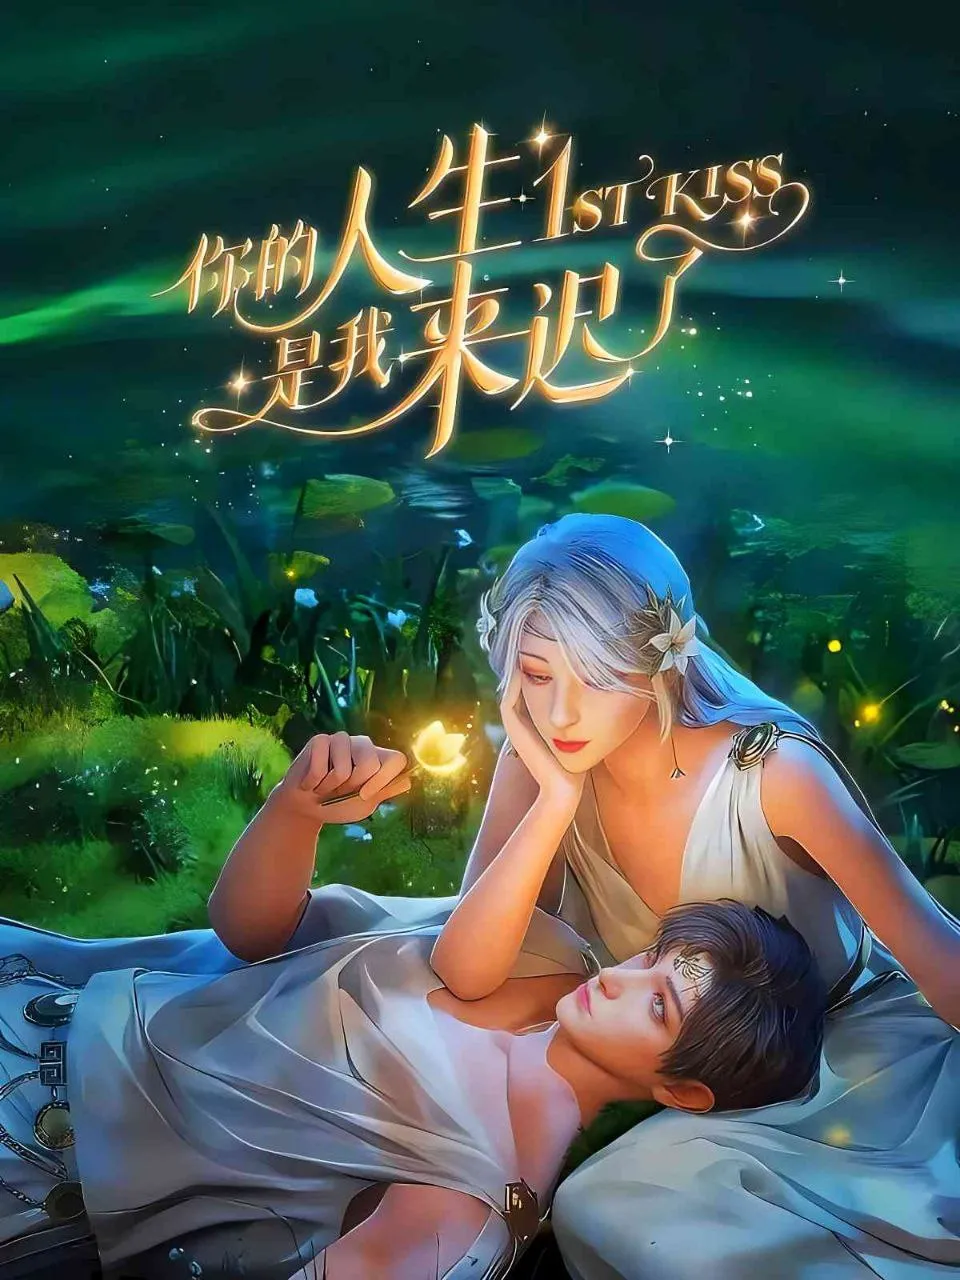 1st Kiss [Ni De Rensheng Shi Wo Lai Chi Le] Episode 05 English Sub